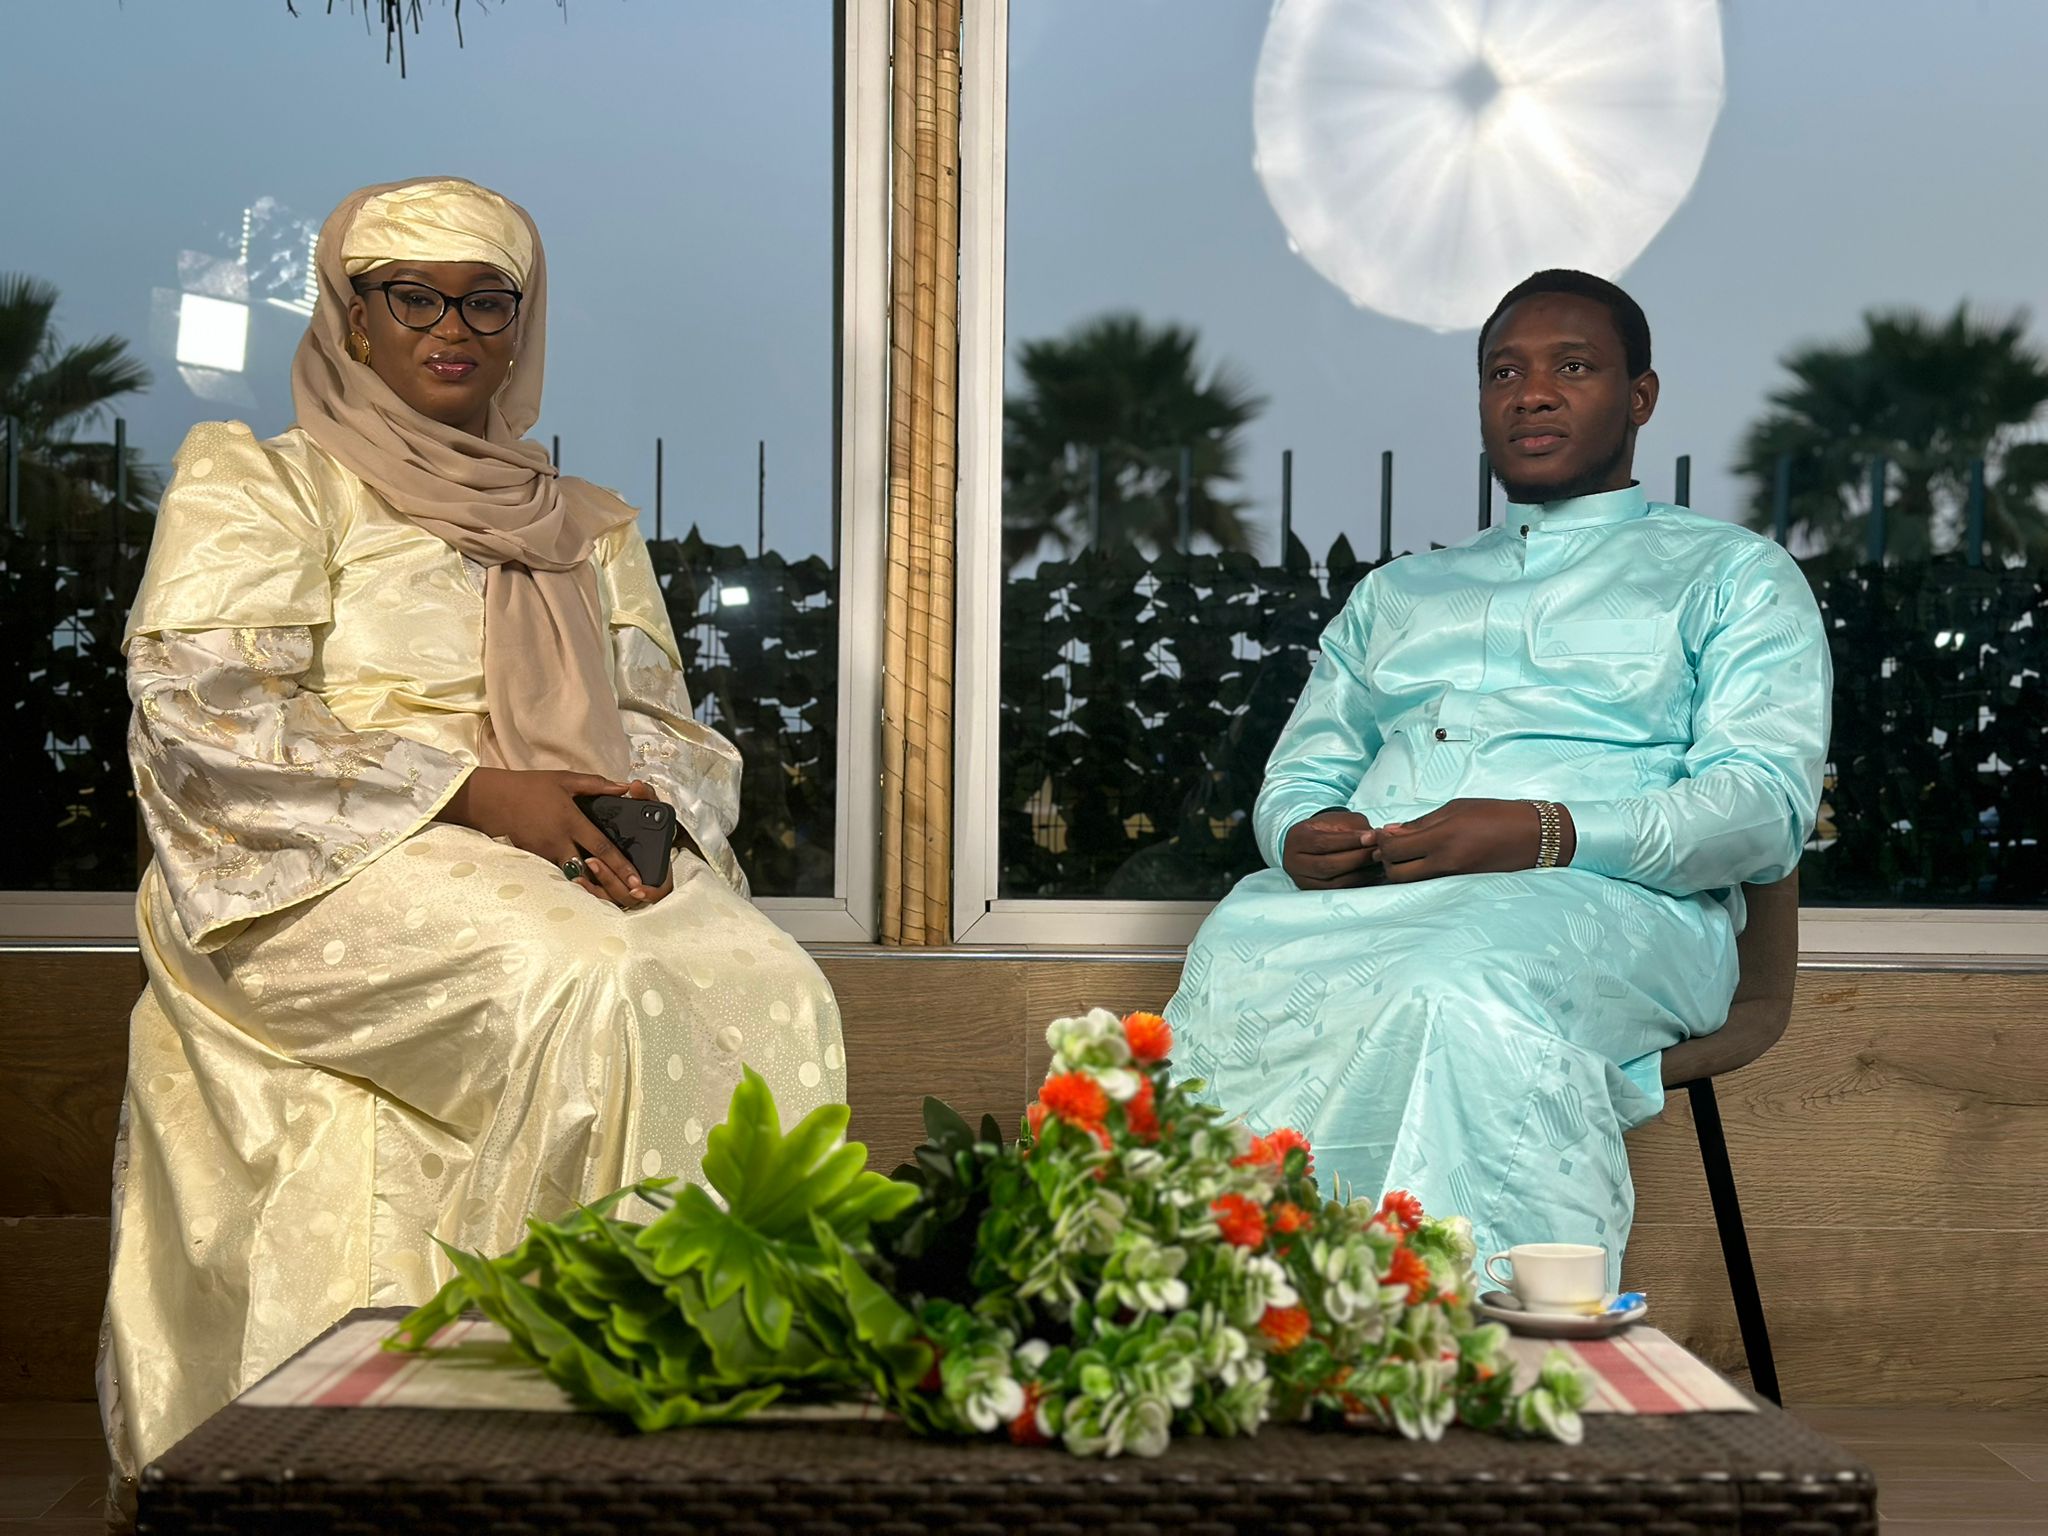 Le Grand Guide Mecquois fait un flop avec sa émission spéciale « SAQIFA » sur les plateformes Sénégalais